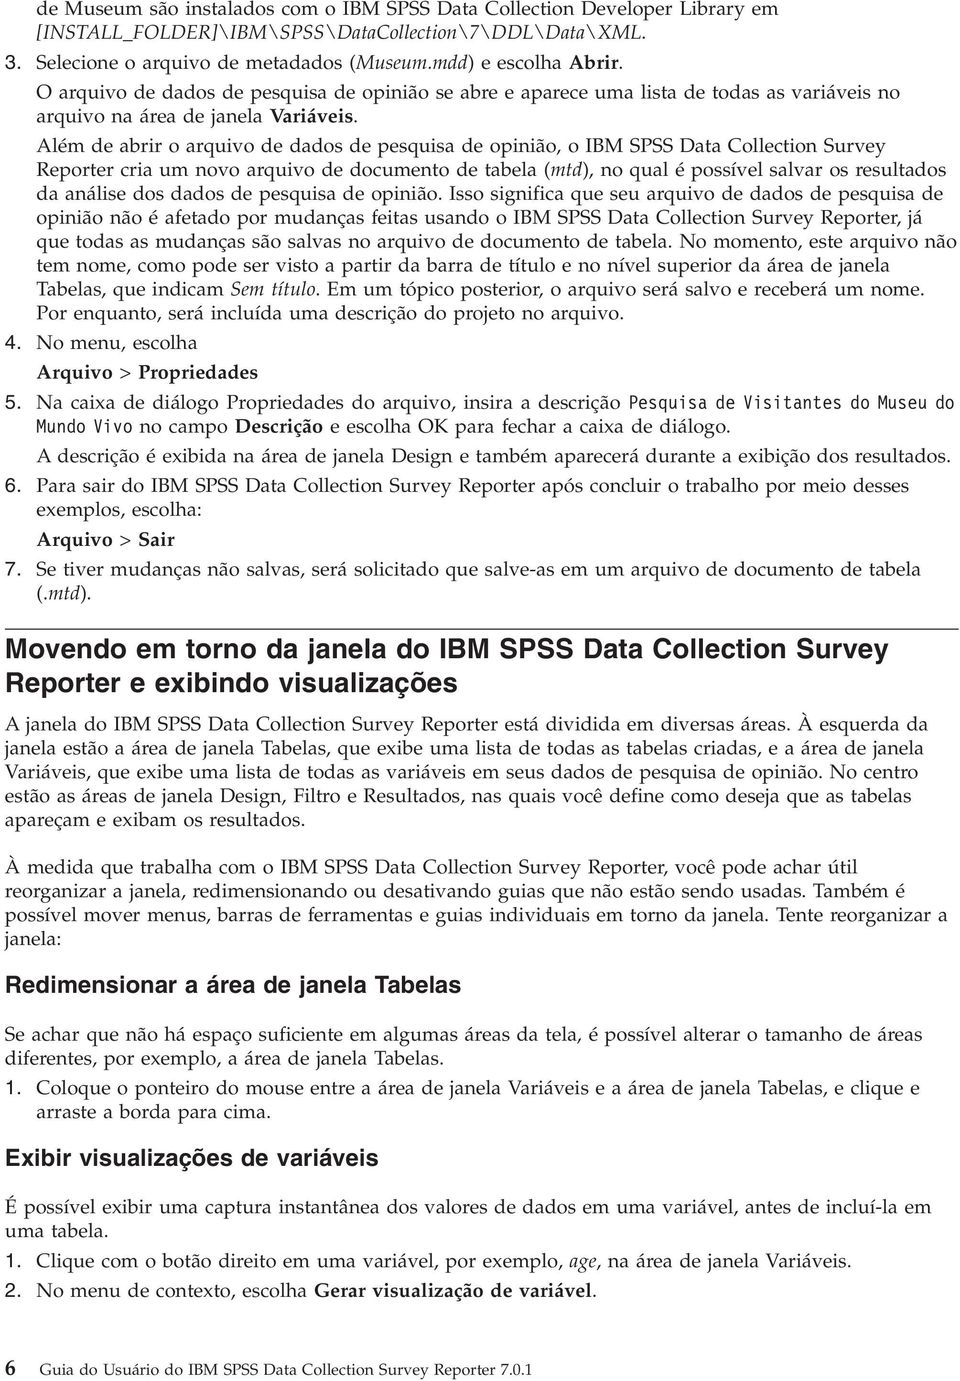 Além de abrir o arquivo de dados de pesquisa de opinião, o IBM SPSS Data Collection Survey Reporter cria um novo arquivo de documento de tabela (mtd), no qual é possível salvar os resultados da